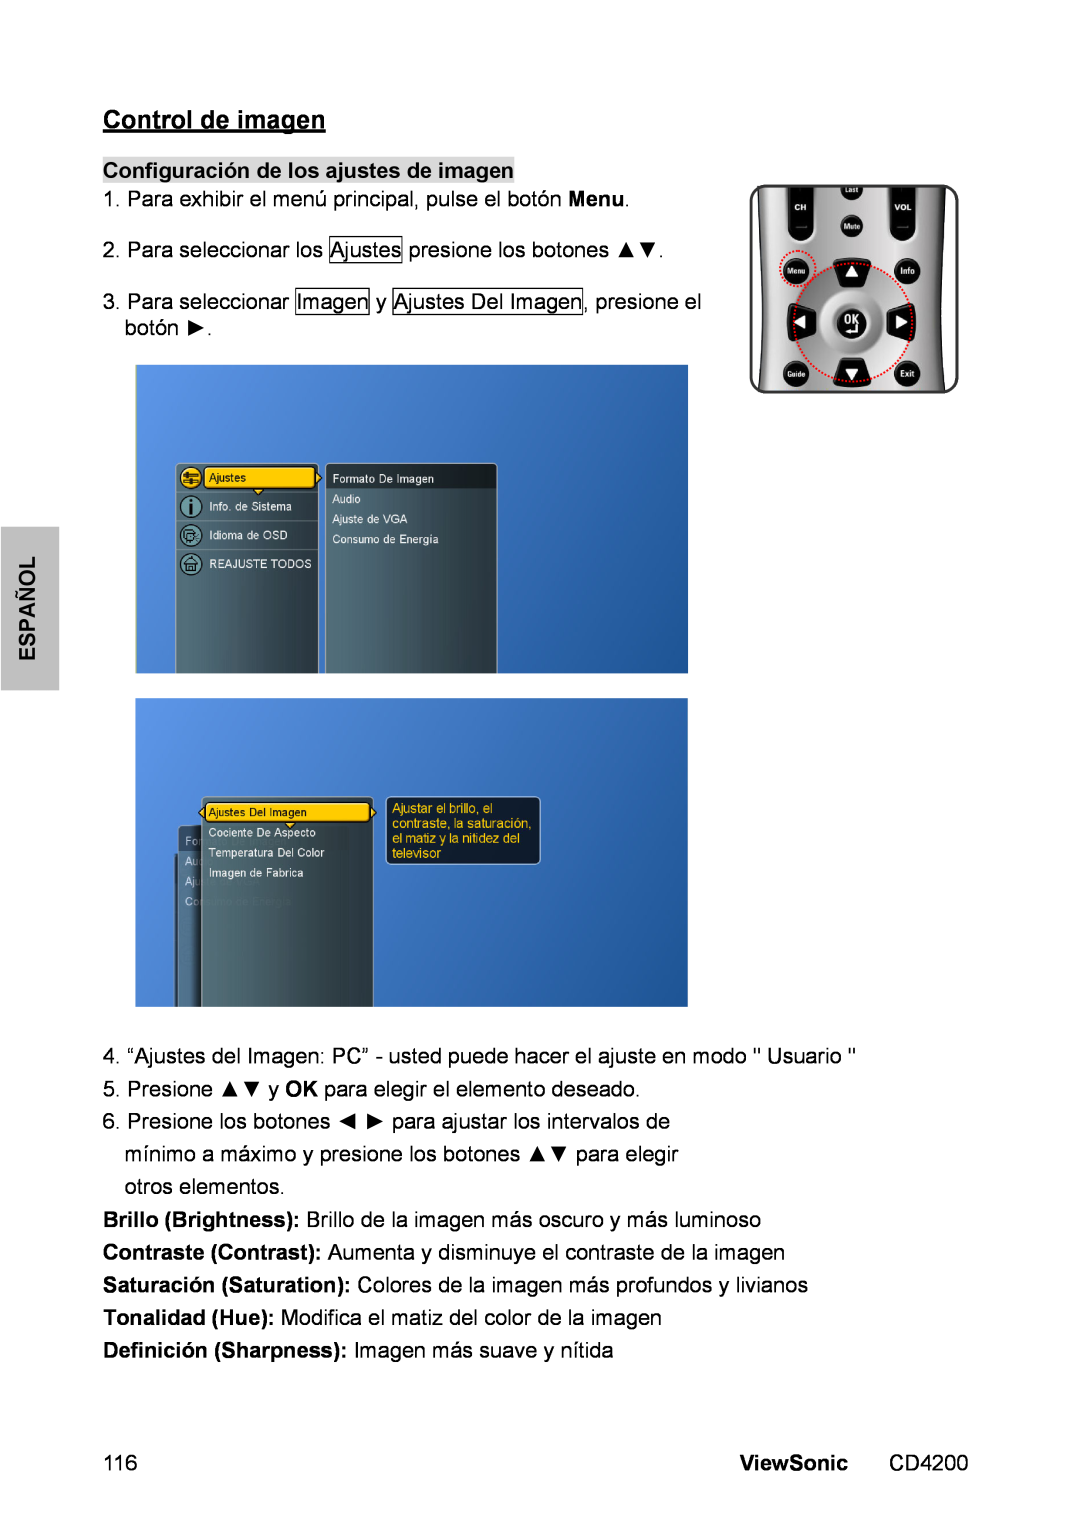 ViewSonic CD4200 manual Control de imagen, Configuración de los ajustes de imagen, Español, ViewSonic 